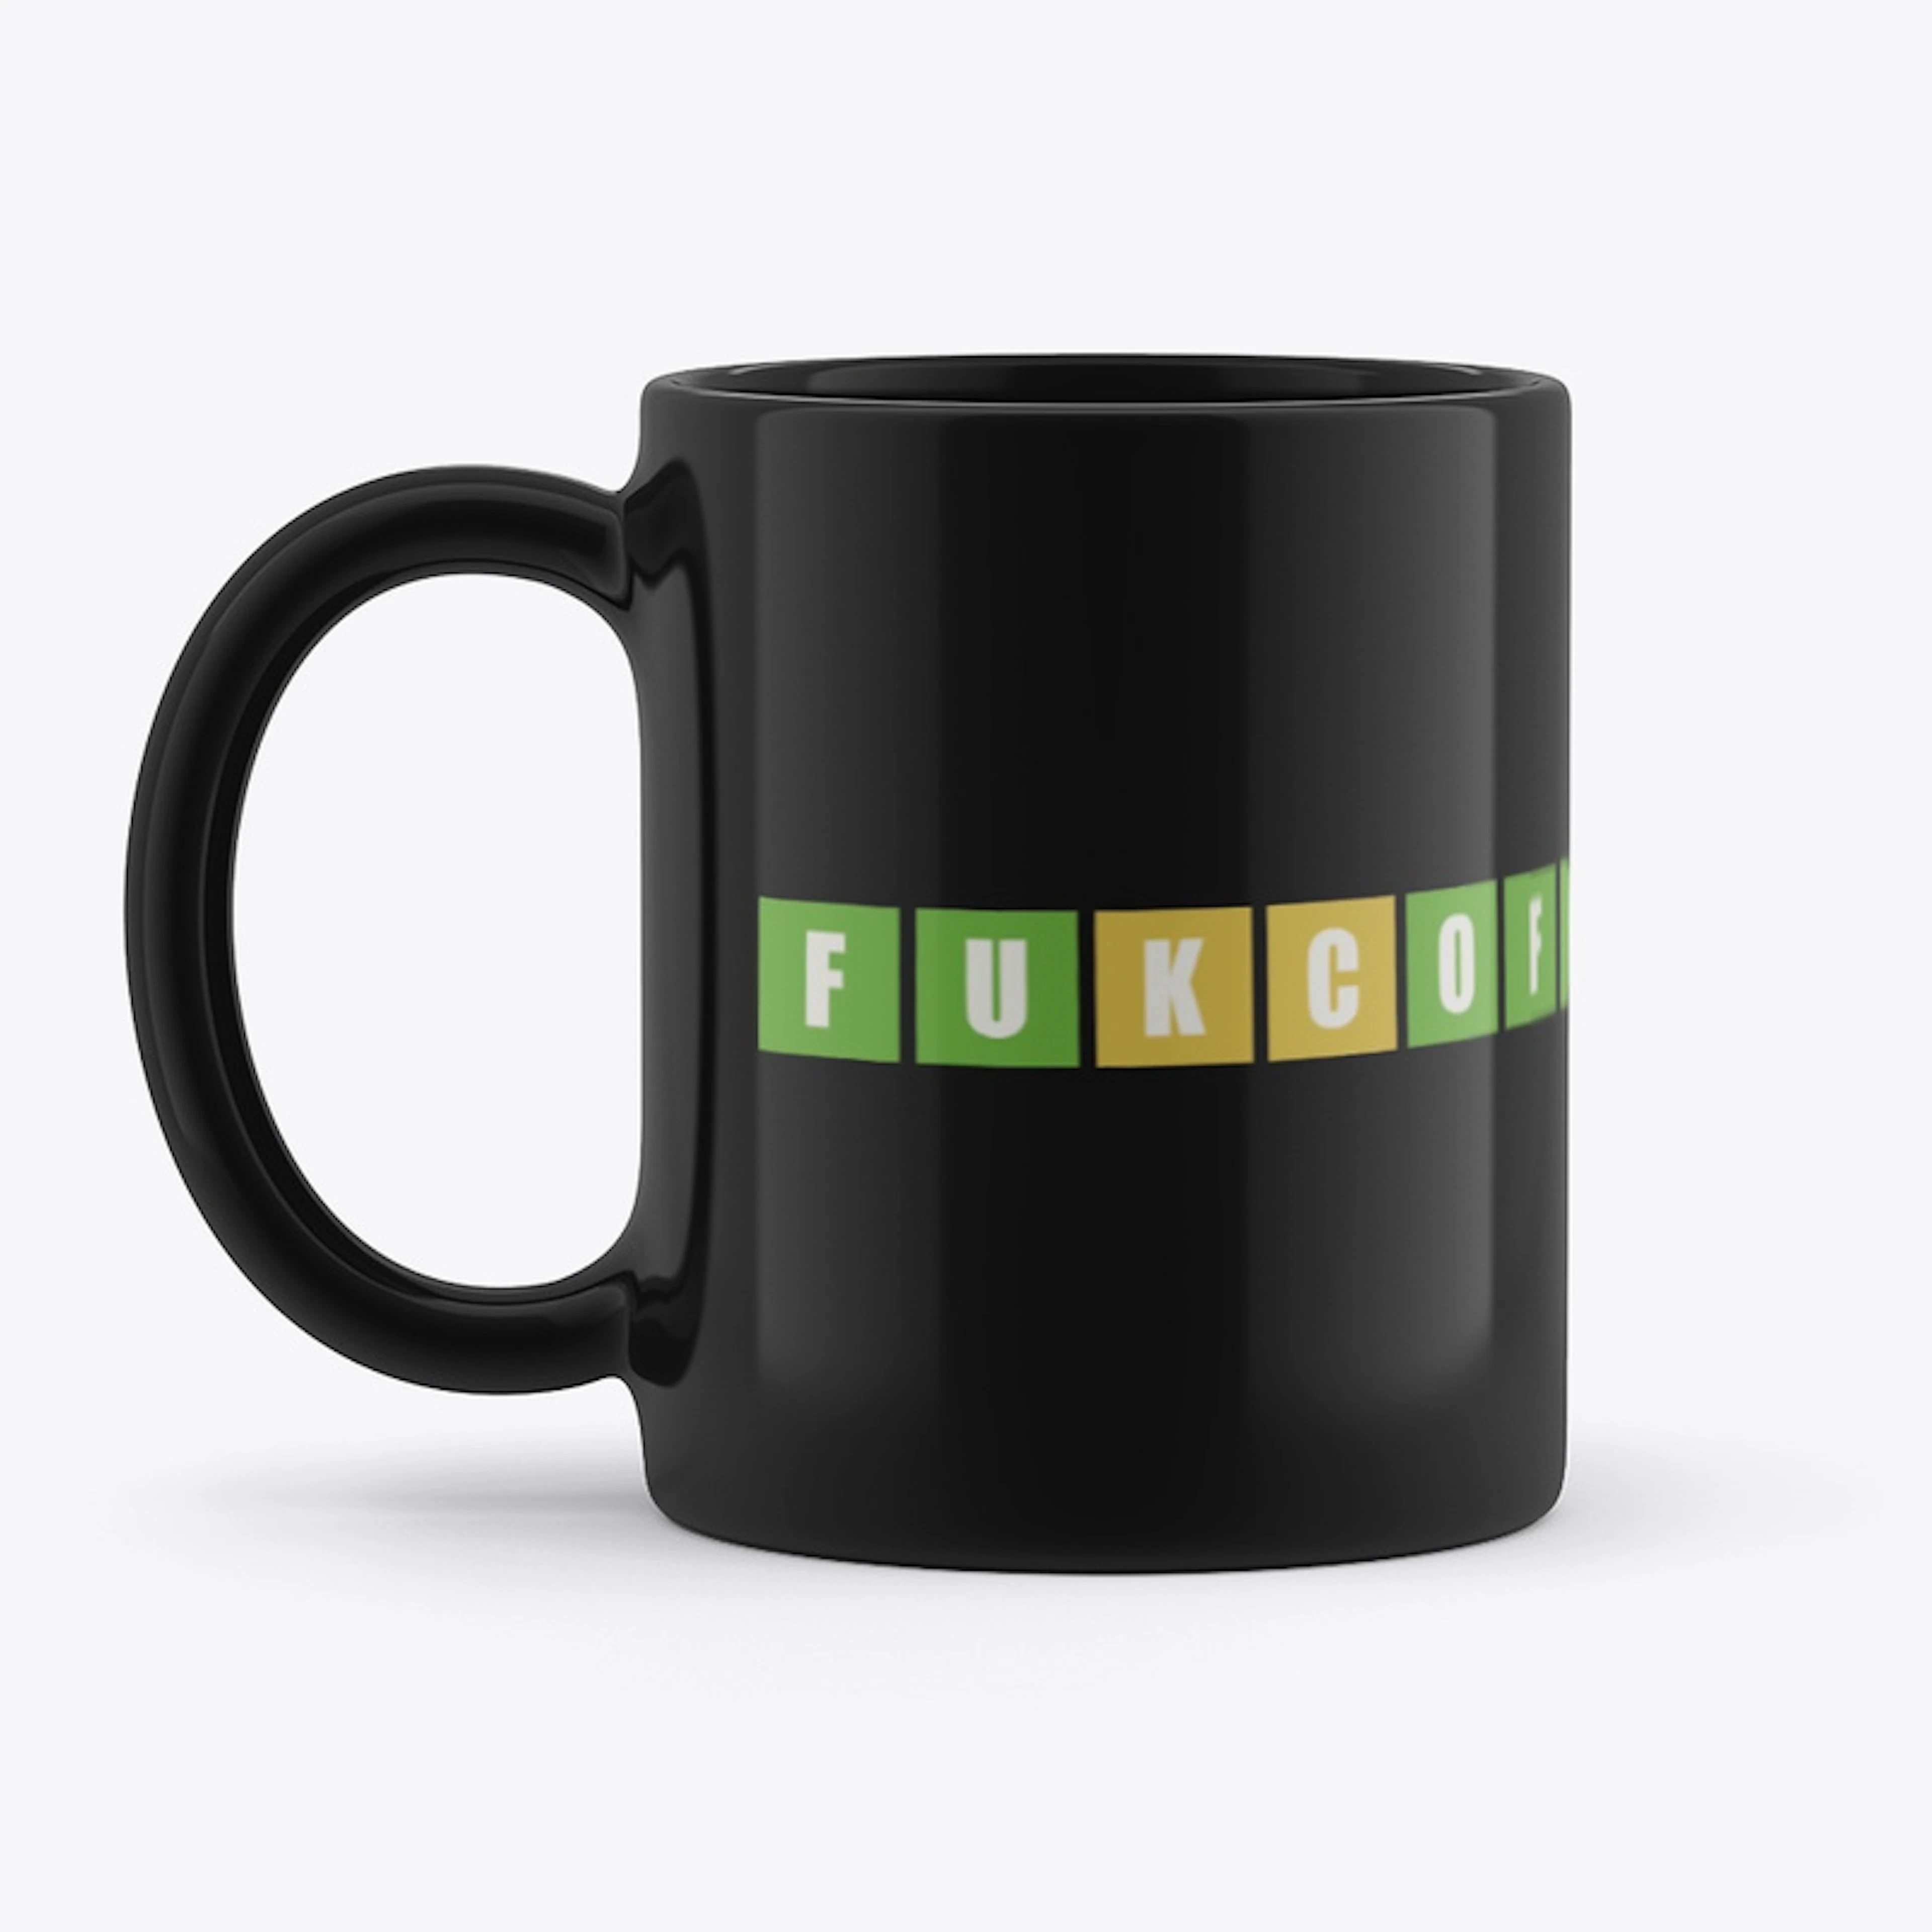 FUKCOFF Coffee Mug